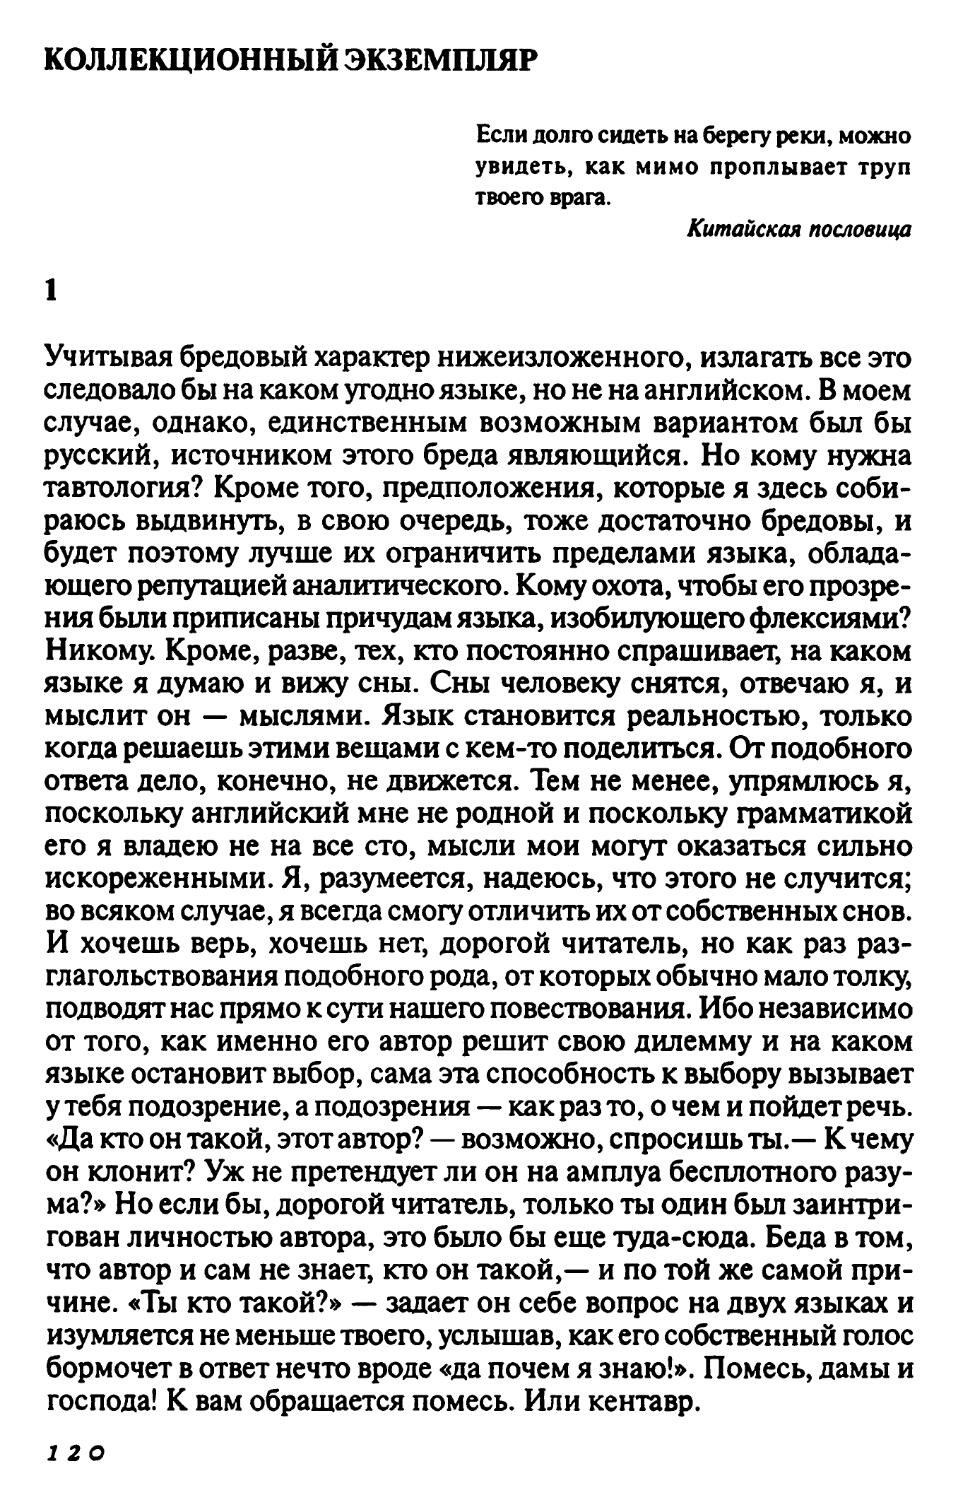 Коллекционный экземпляр. Авторизованный перевод А. Сумеркина